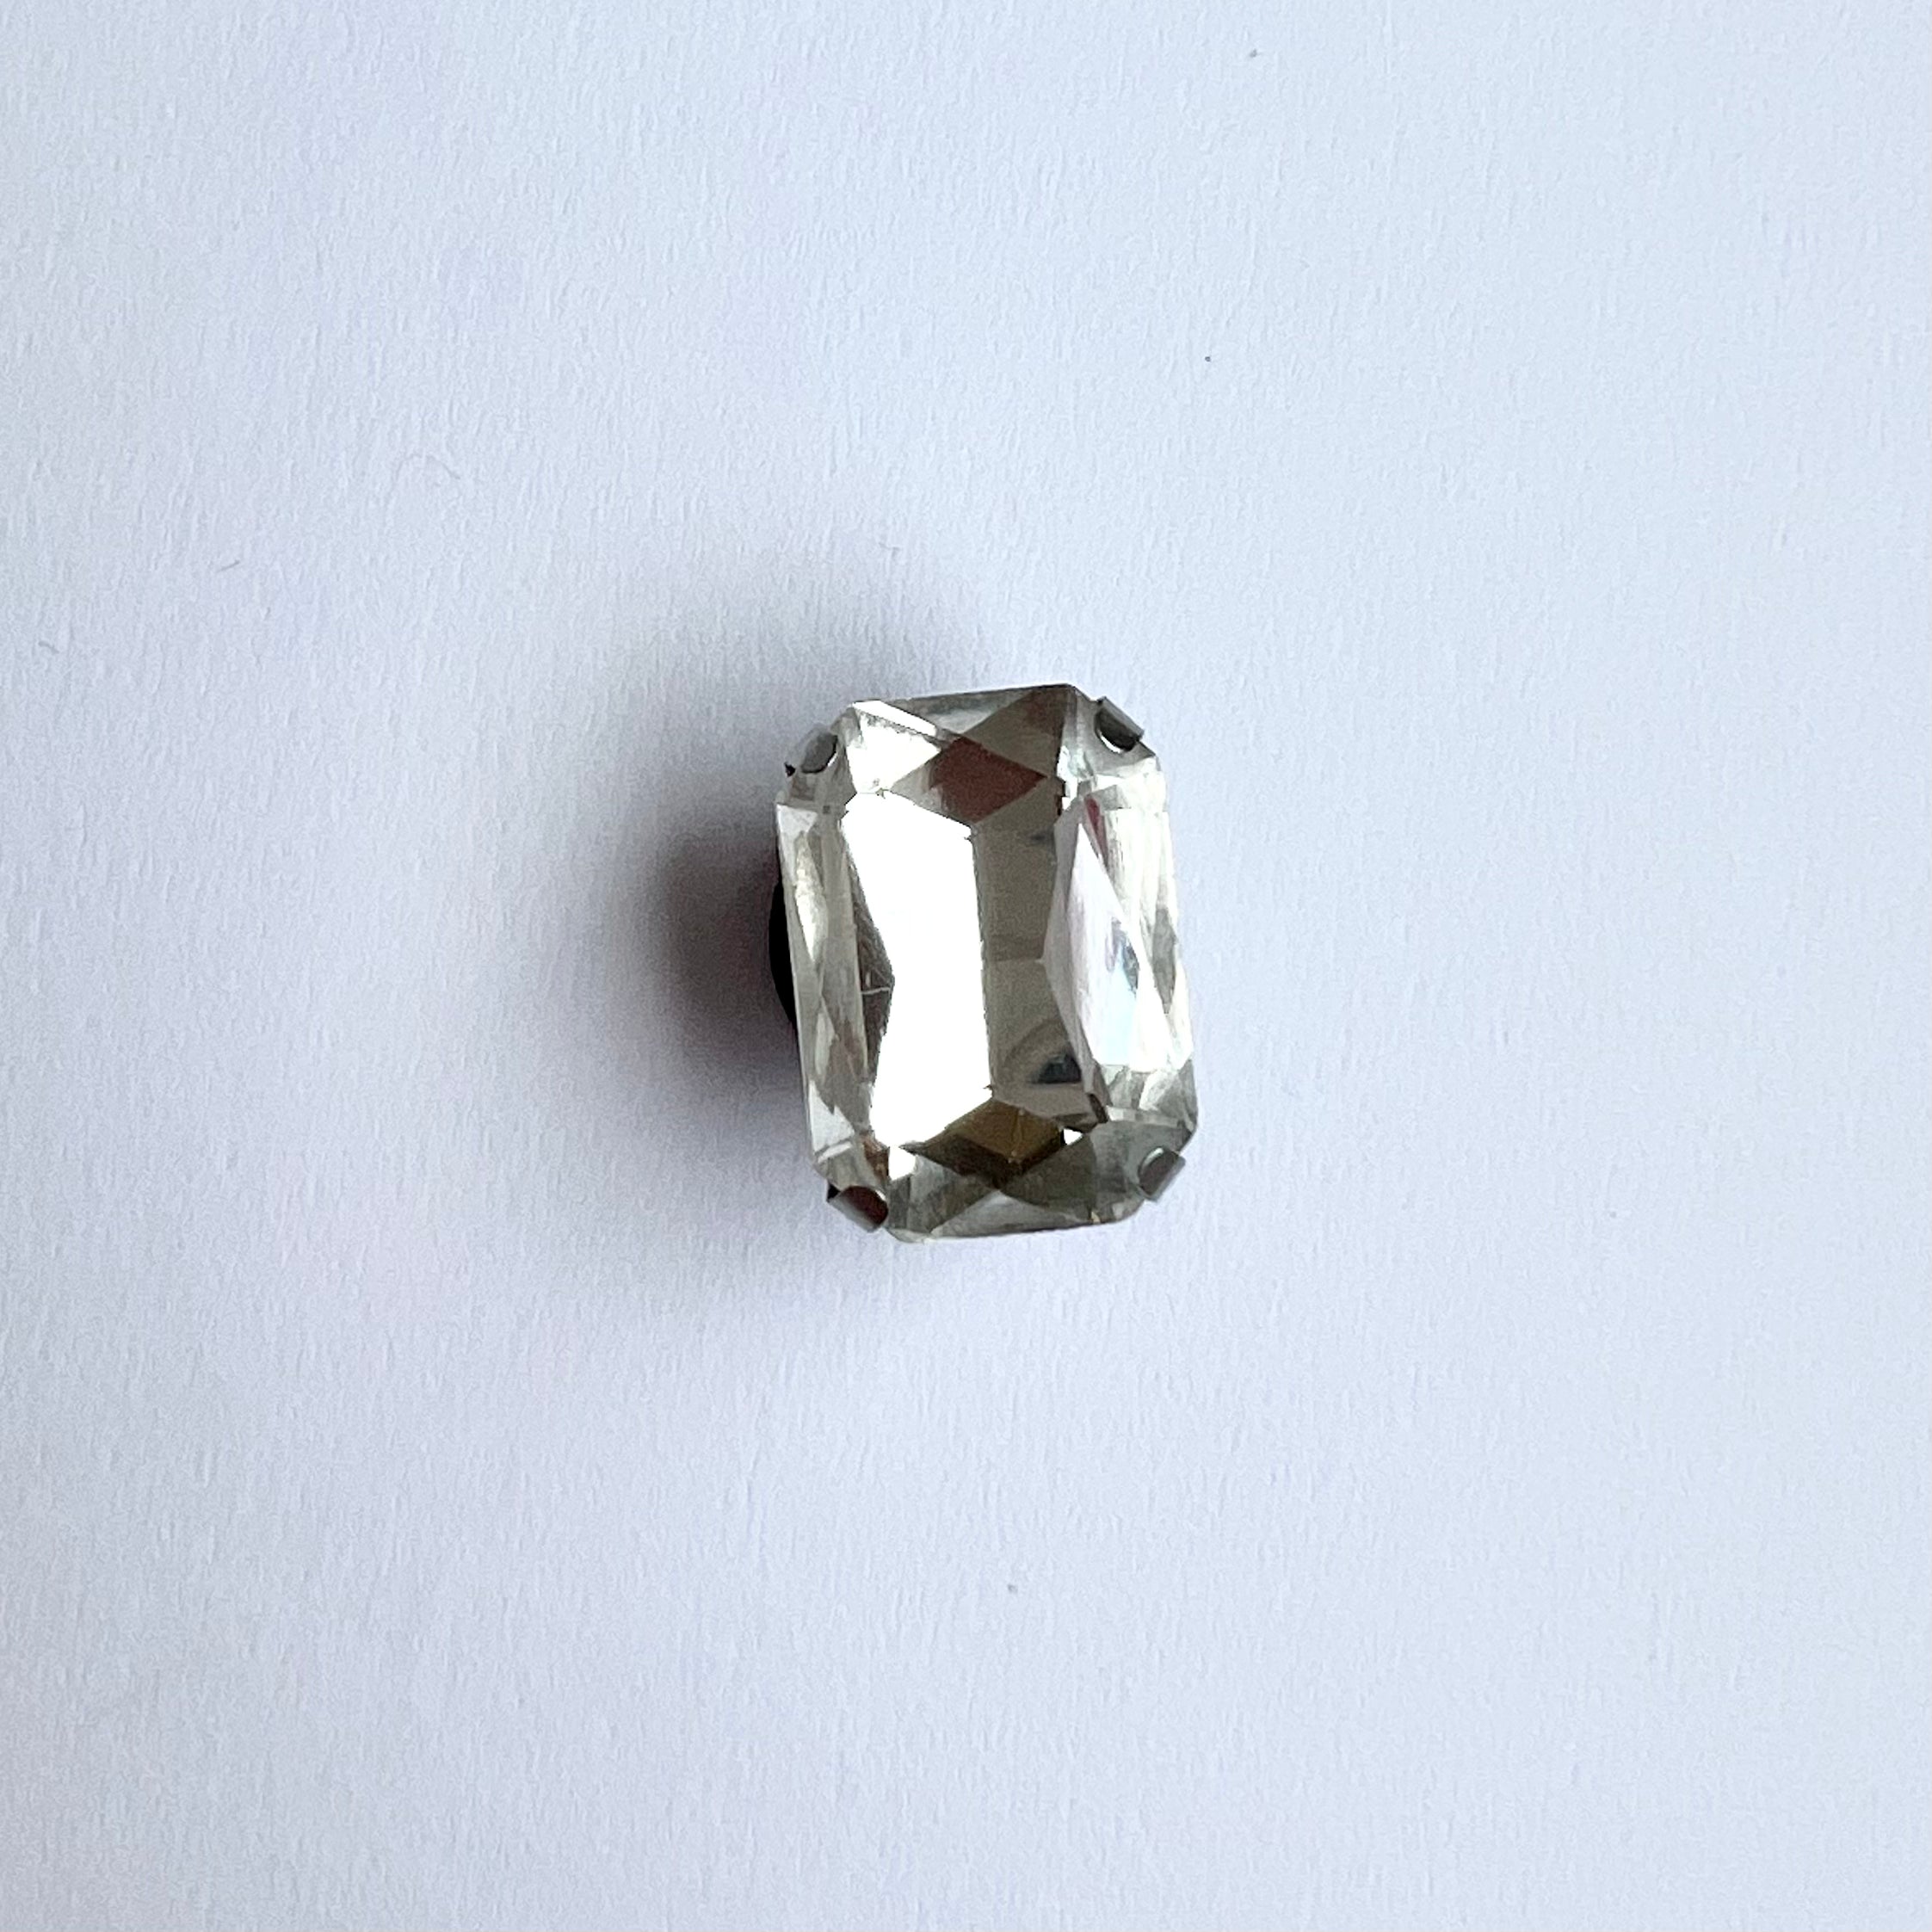 Gemstone - Crystal Clear Charm